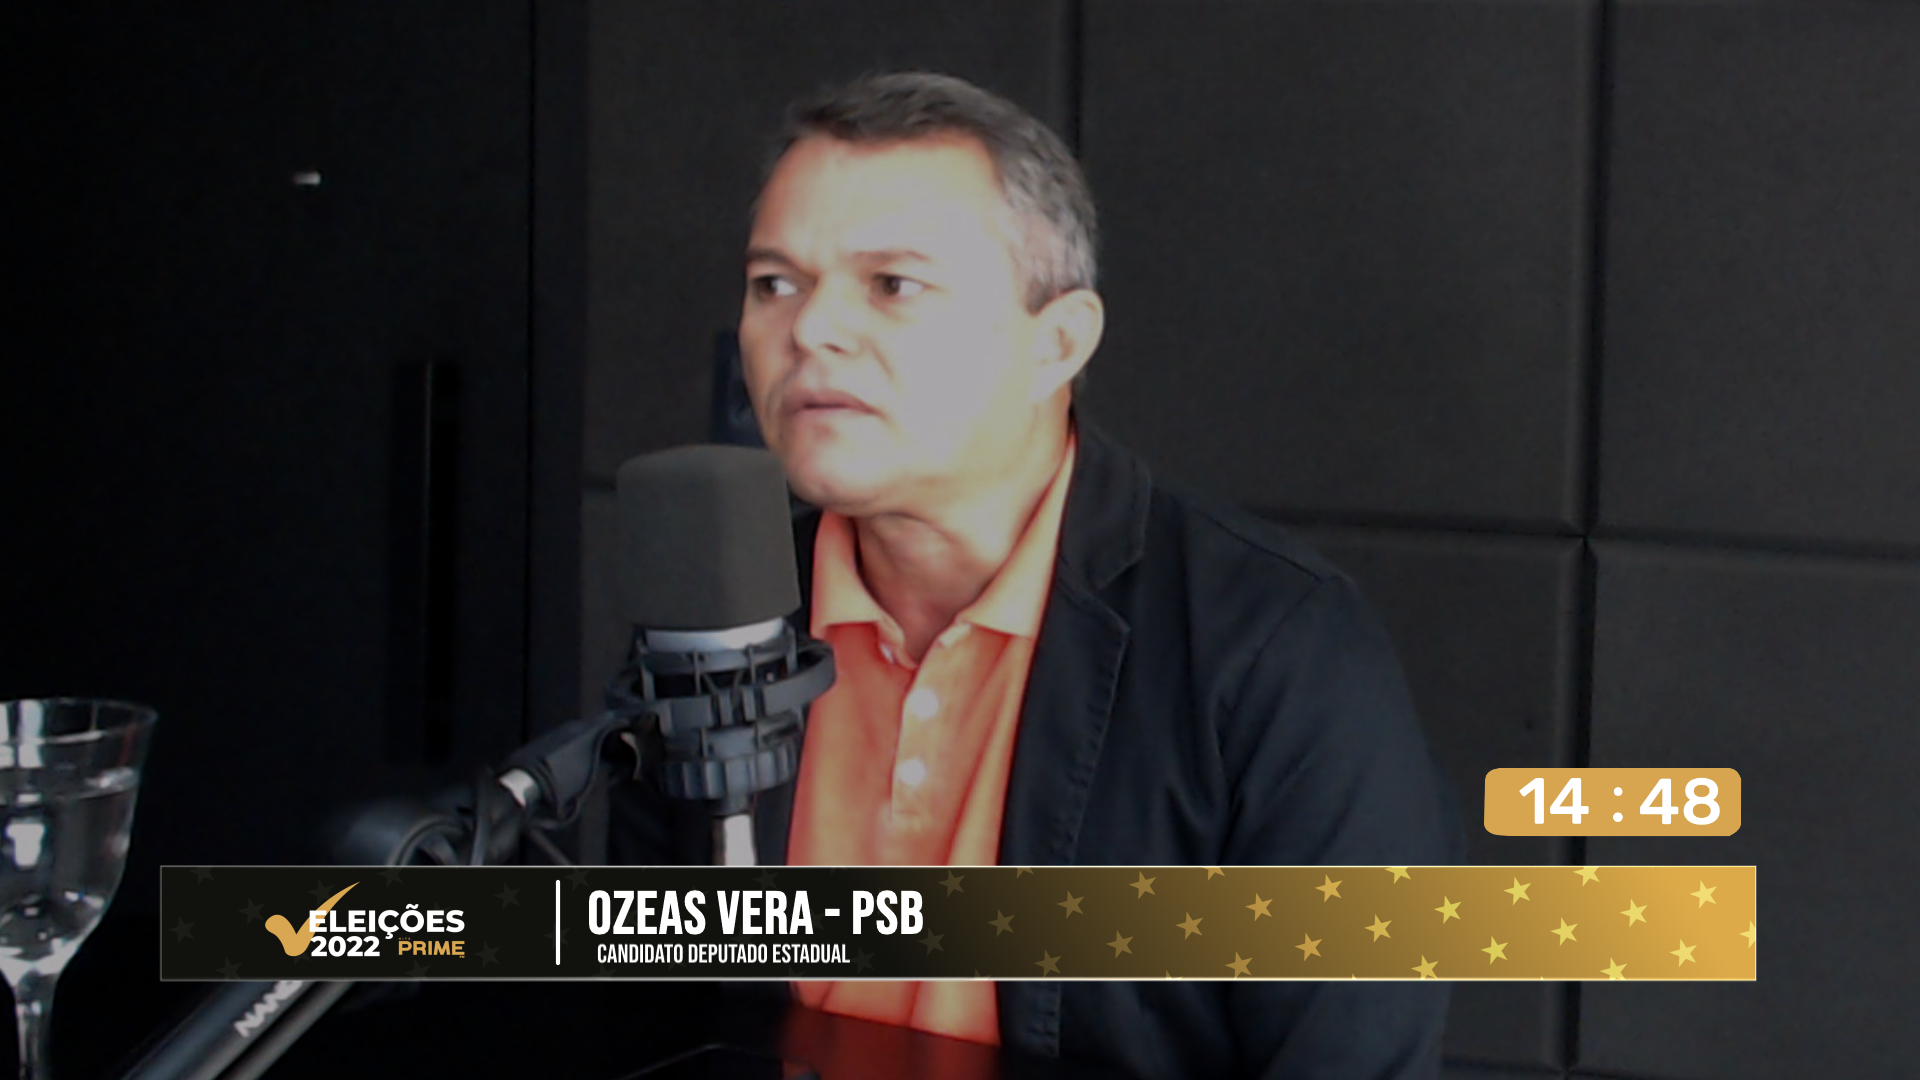 Confira a entrevista com o candidato a Deputado Estadual Ozeas Veras na Hits Prime FM 4